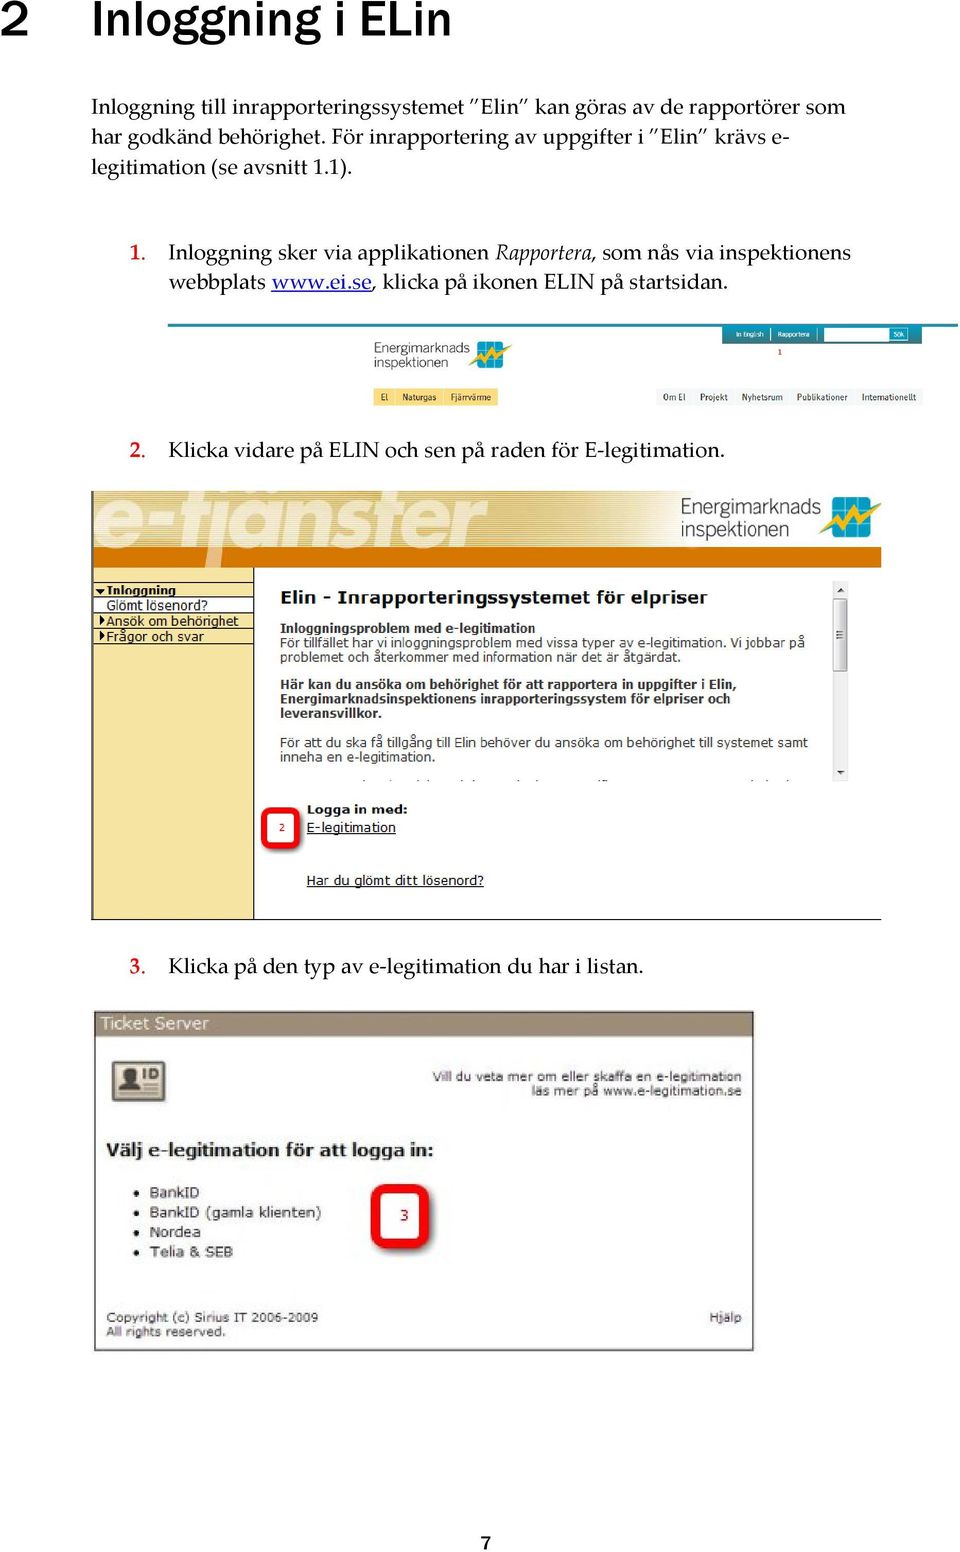 1). 1. Inloggning sker via applikationen Rapportera, som nås via inspektionens webbplats www.ei.